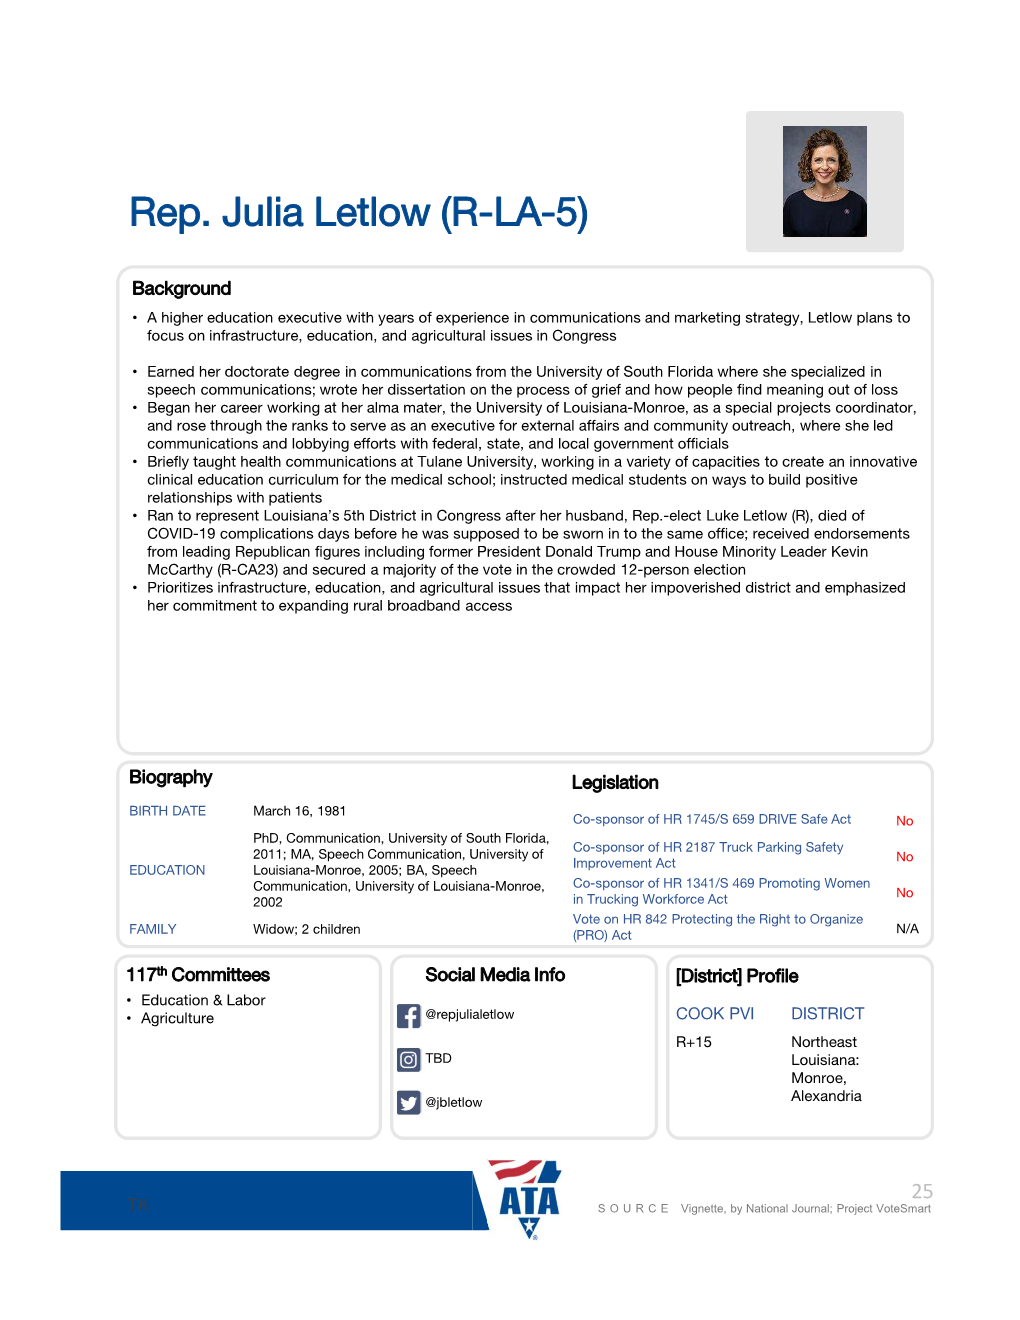 Rep. Julia Letlow (R-LA-5) E